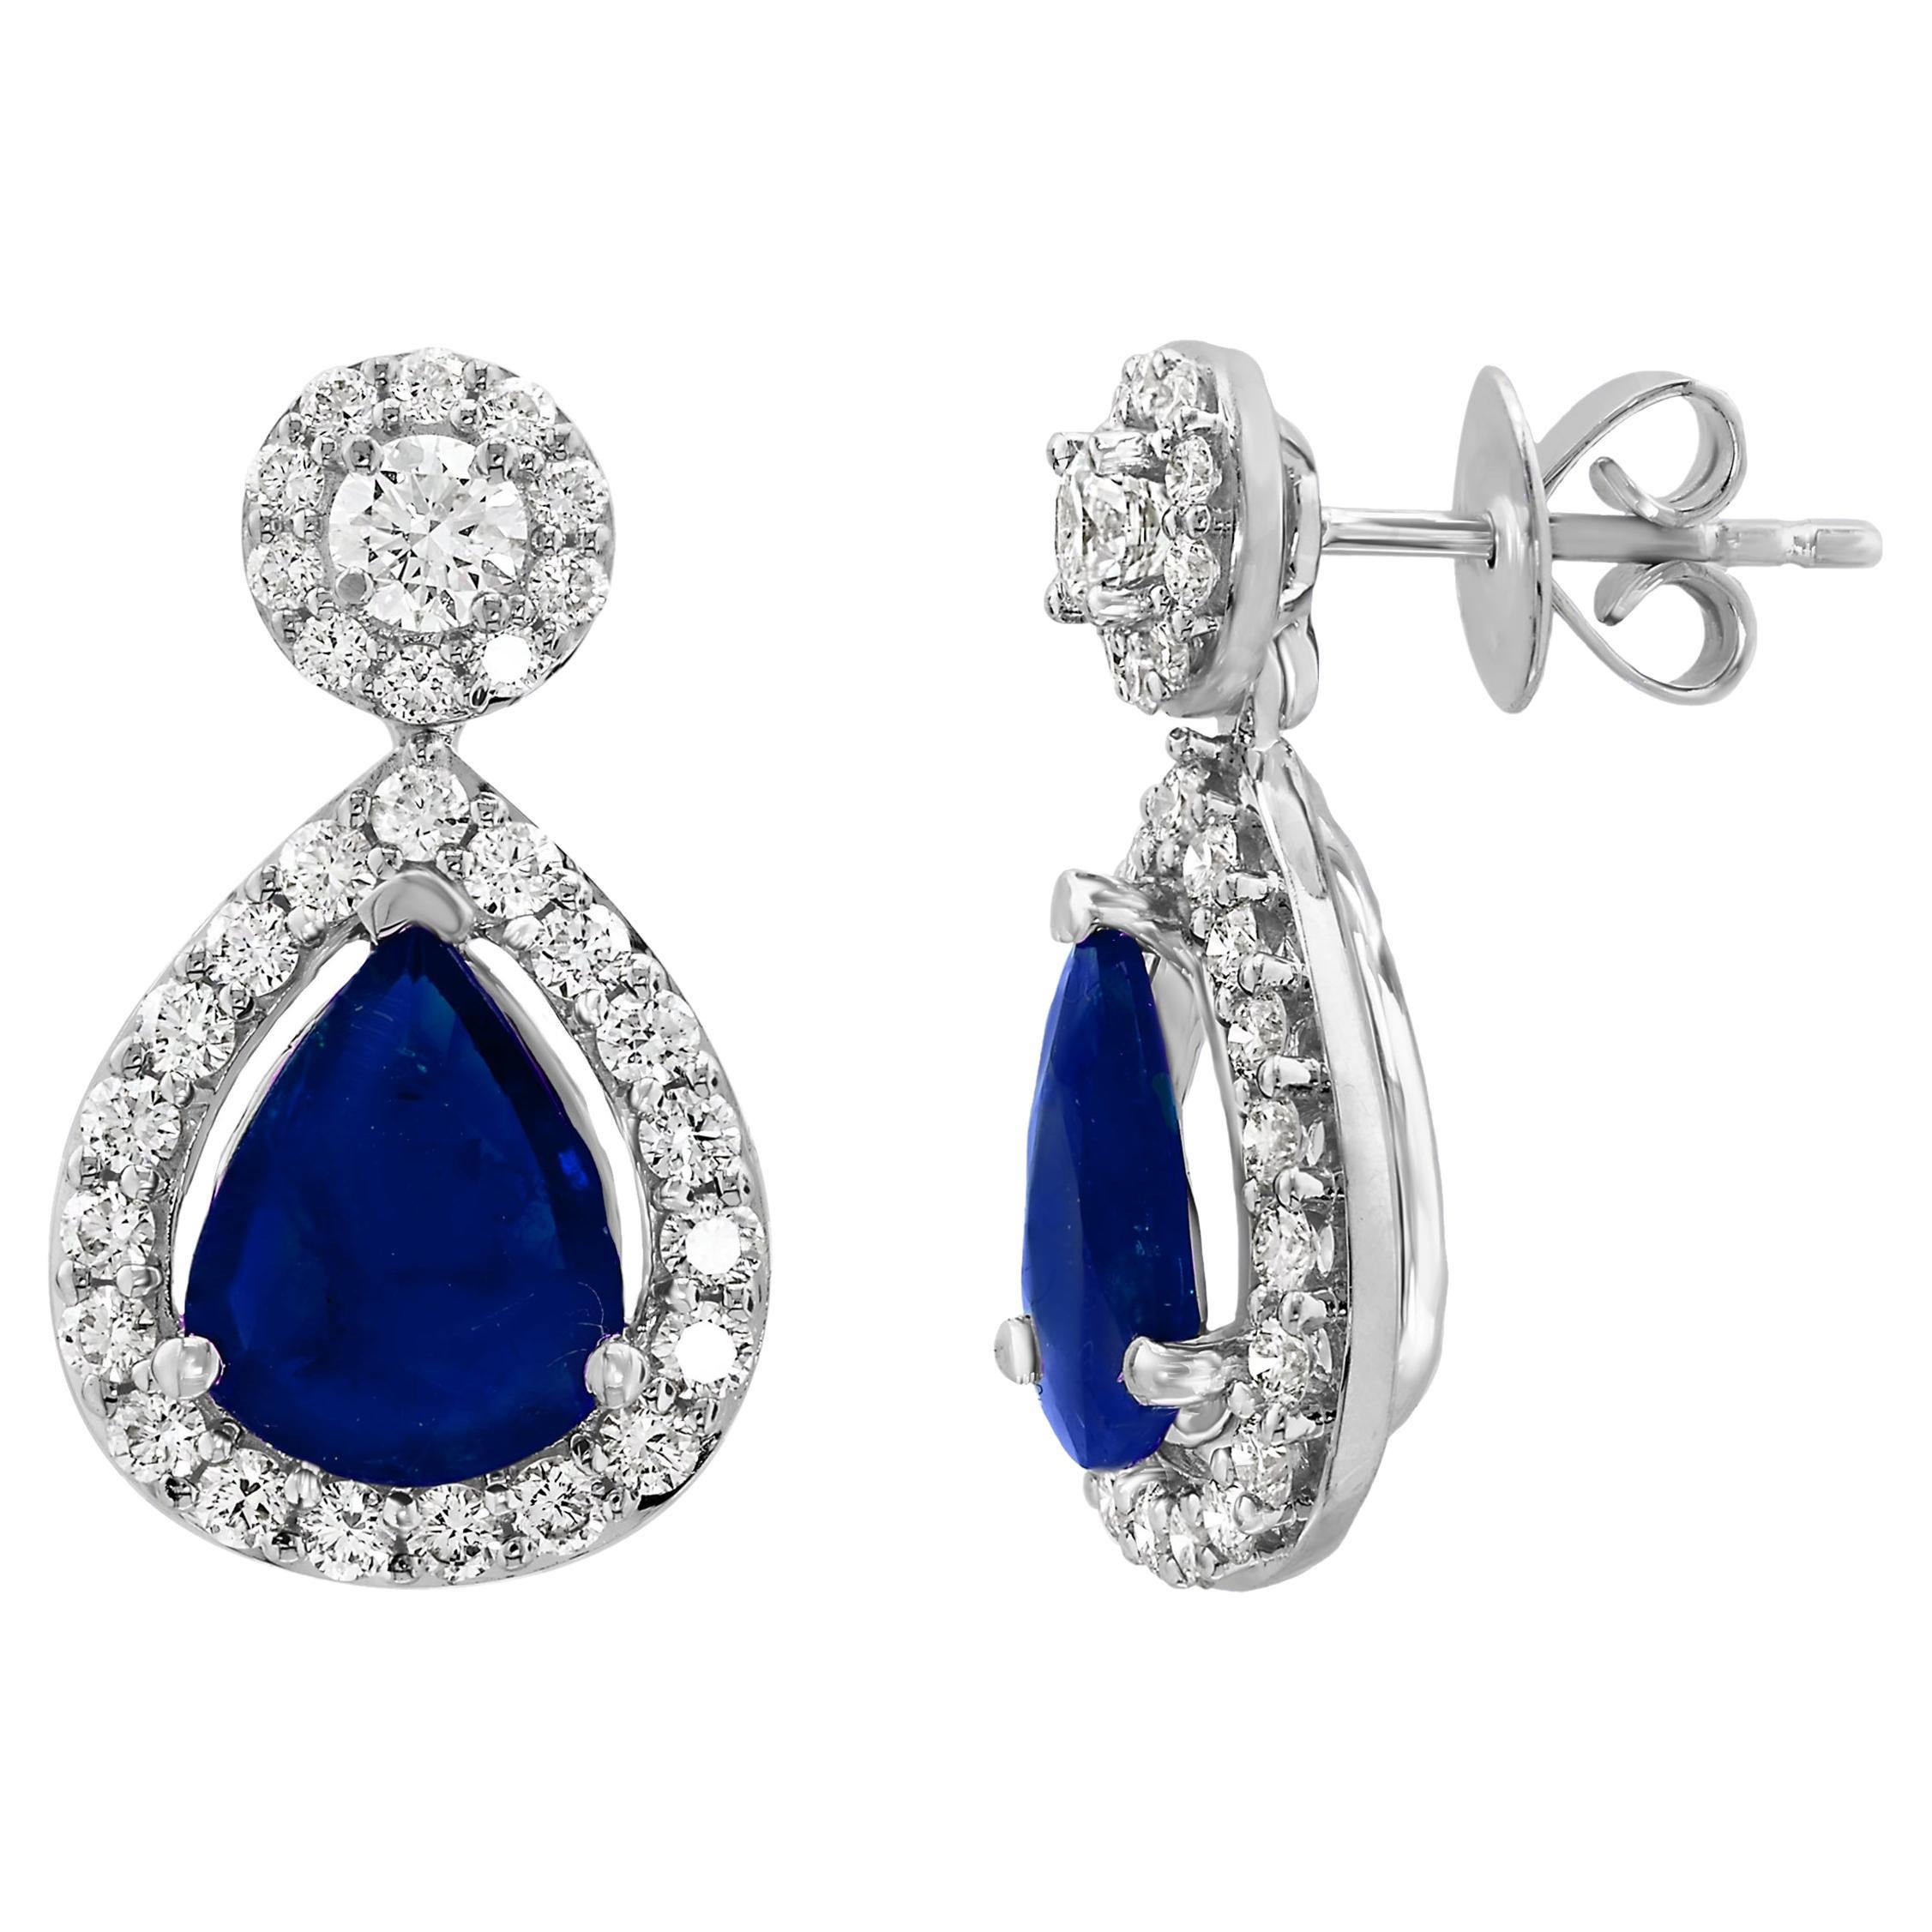 5.34 Carat of Pear Shape Blue Sapphire Diamond Drop Earrings in 18K White Gold For Sale